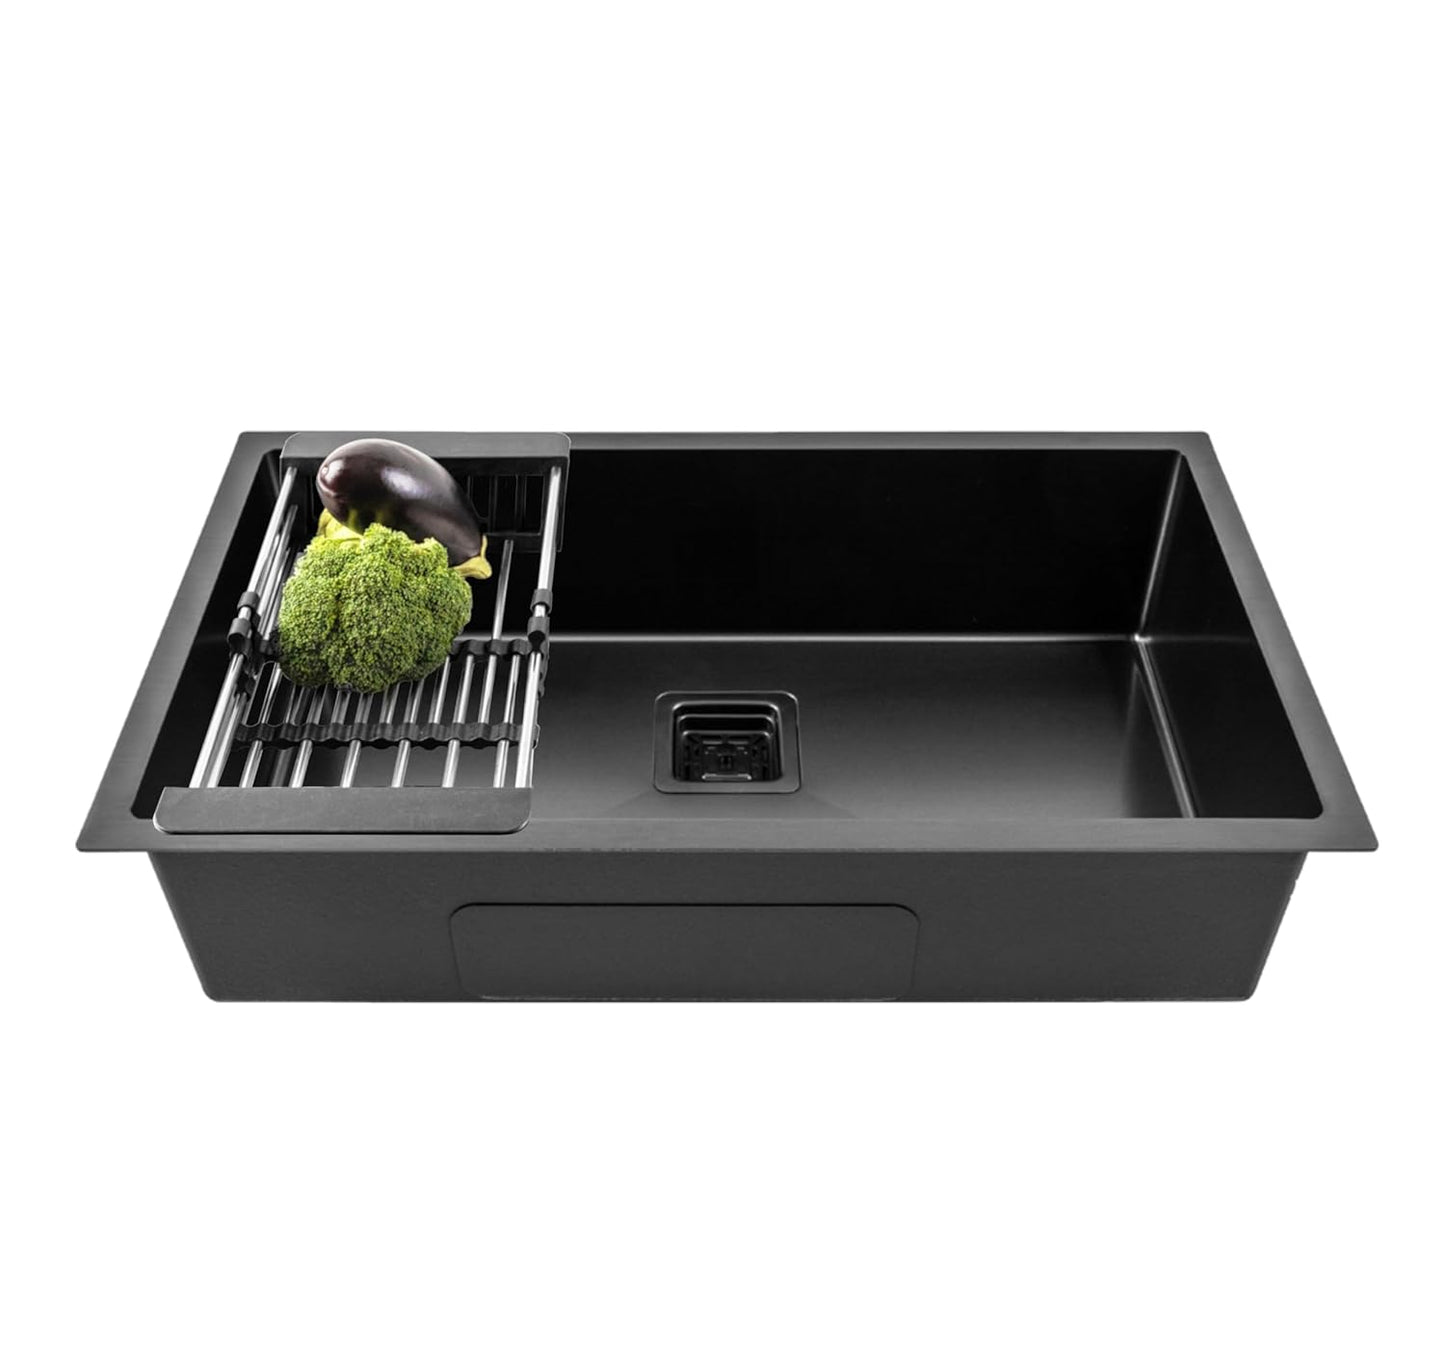 Fossa 30"x18"x10" Inch Single Bowl Premium Stainless Steel Handmade Kitchen Sink (Matte Finish) Black